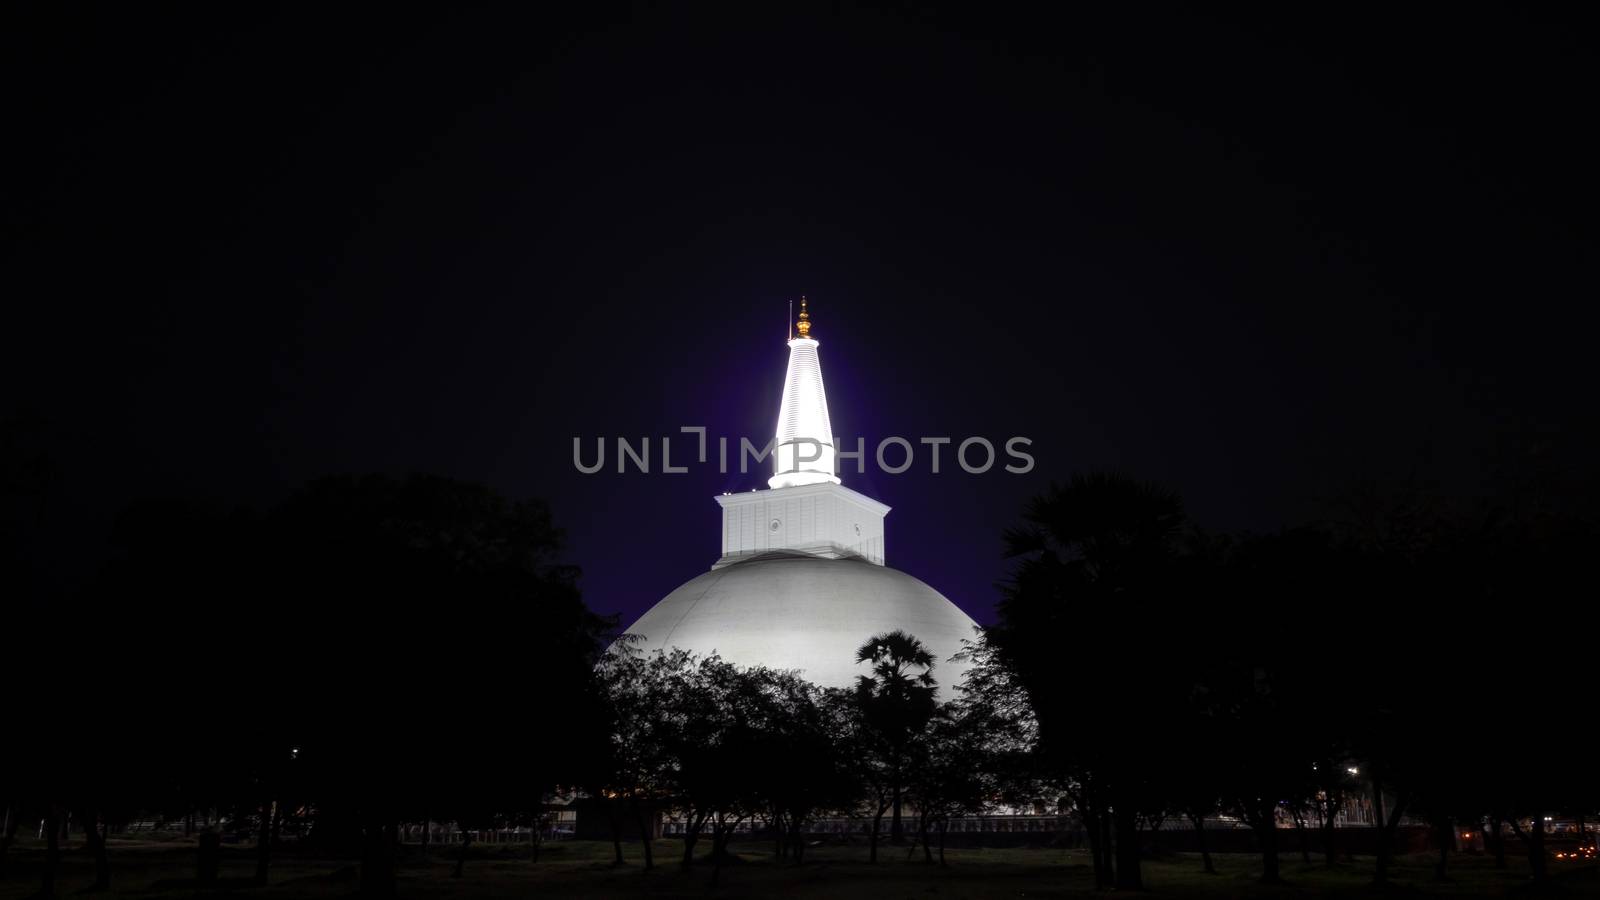 Ruwanwelisaya maha stupa night photograph, Anuradhapura Sri Lanka